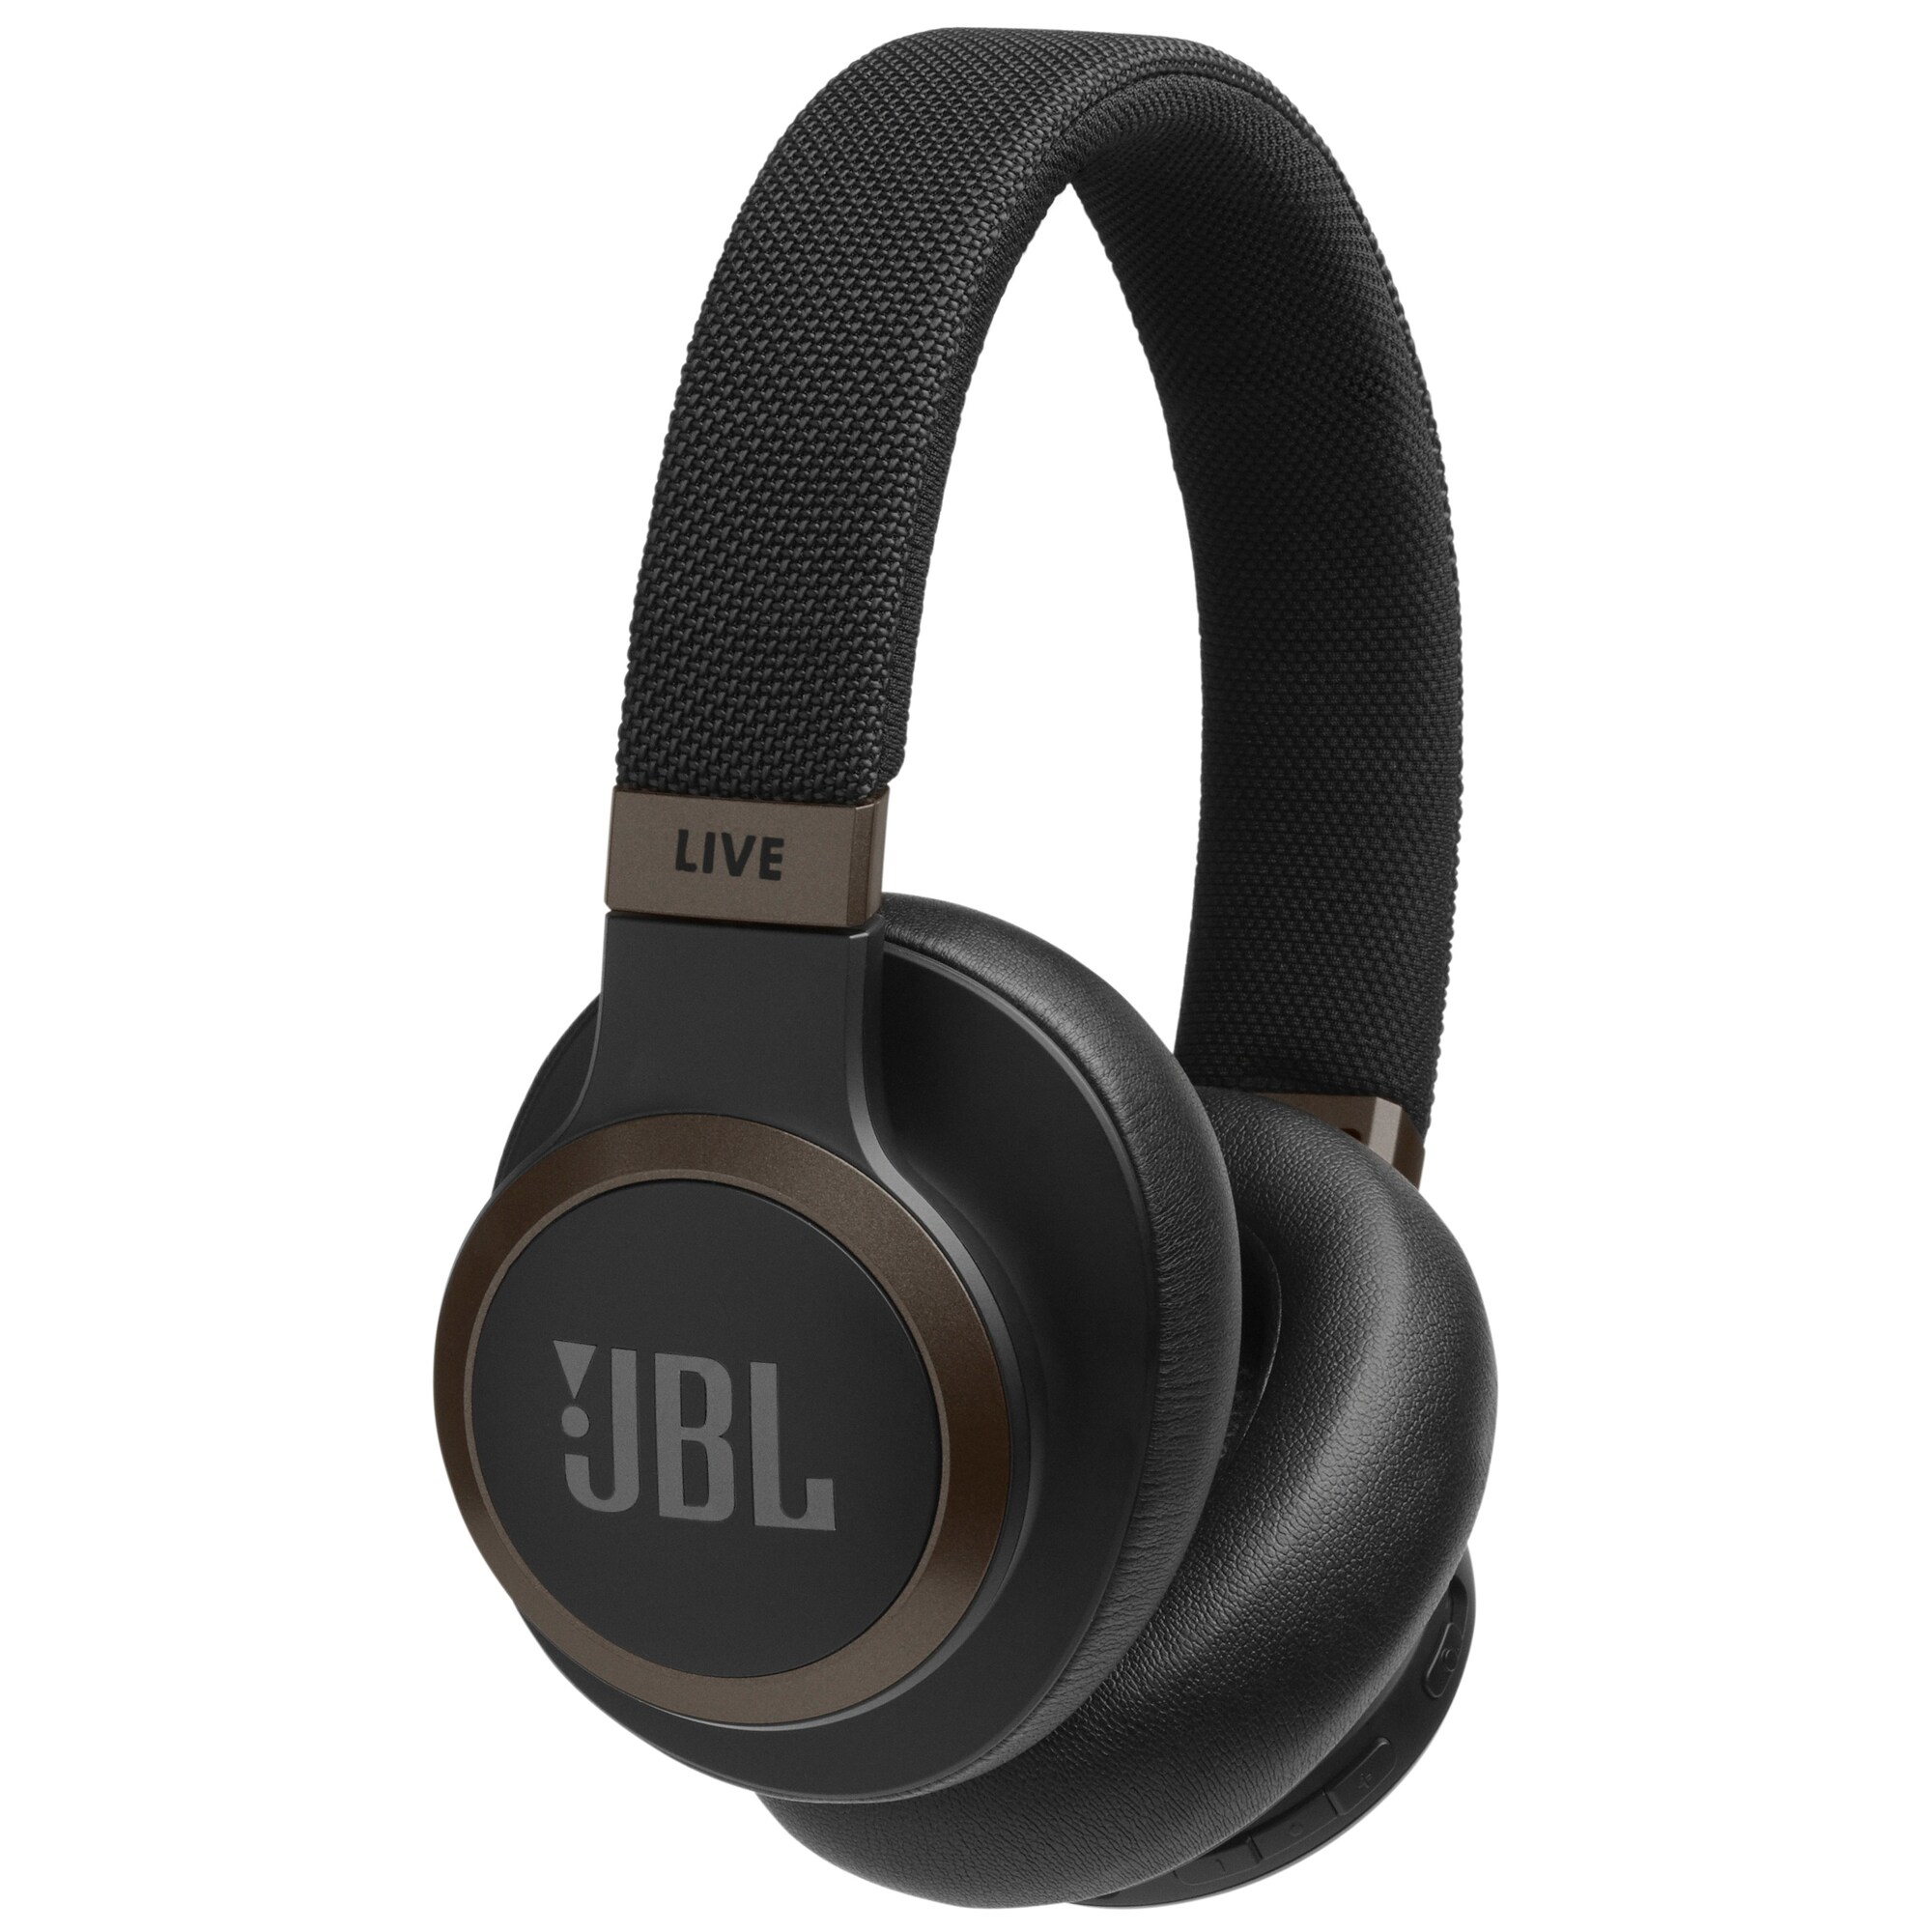 JBL LIVE 650BT trådlösa around-ear hörlurar (svart) - Hörlurar - Elgiganten